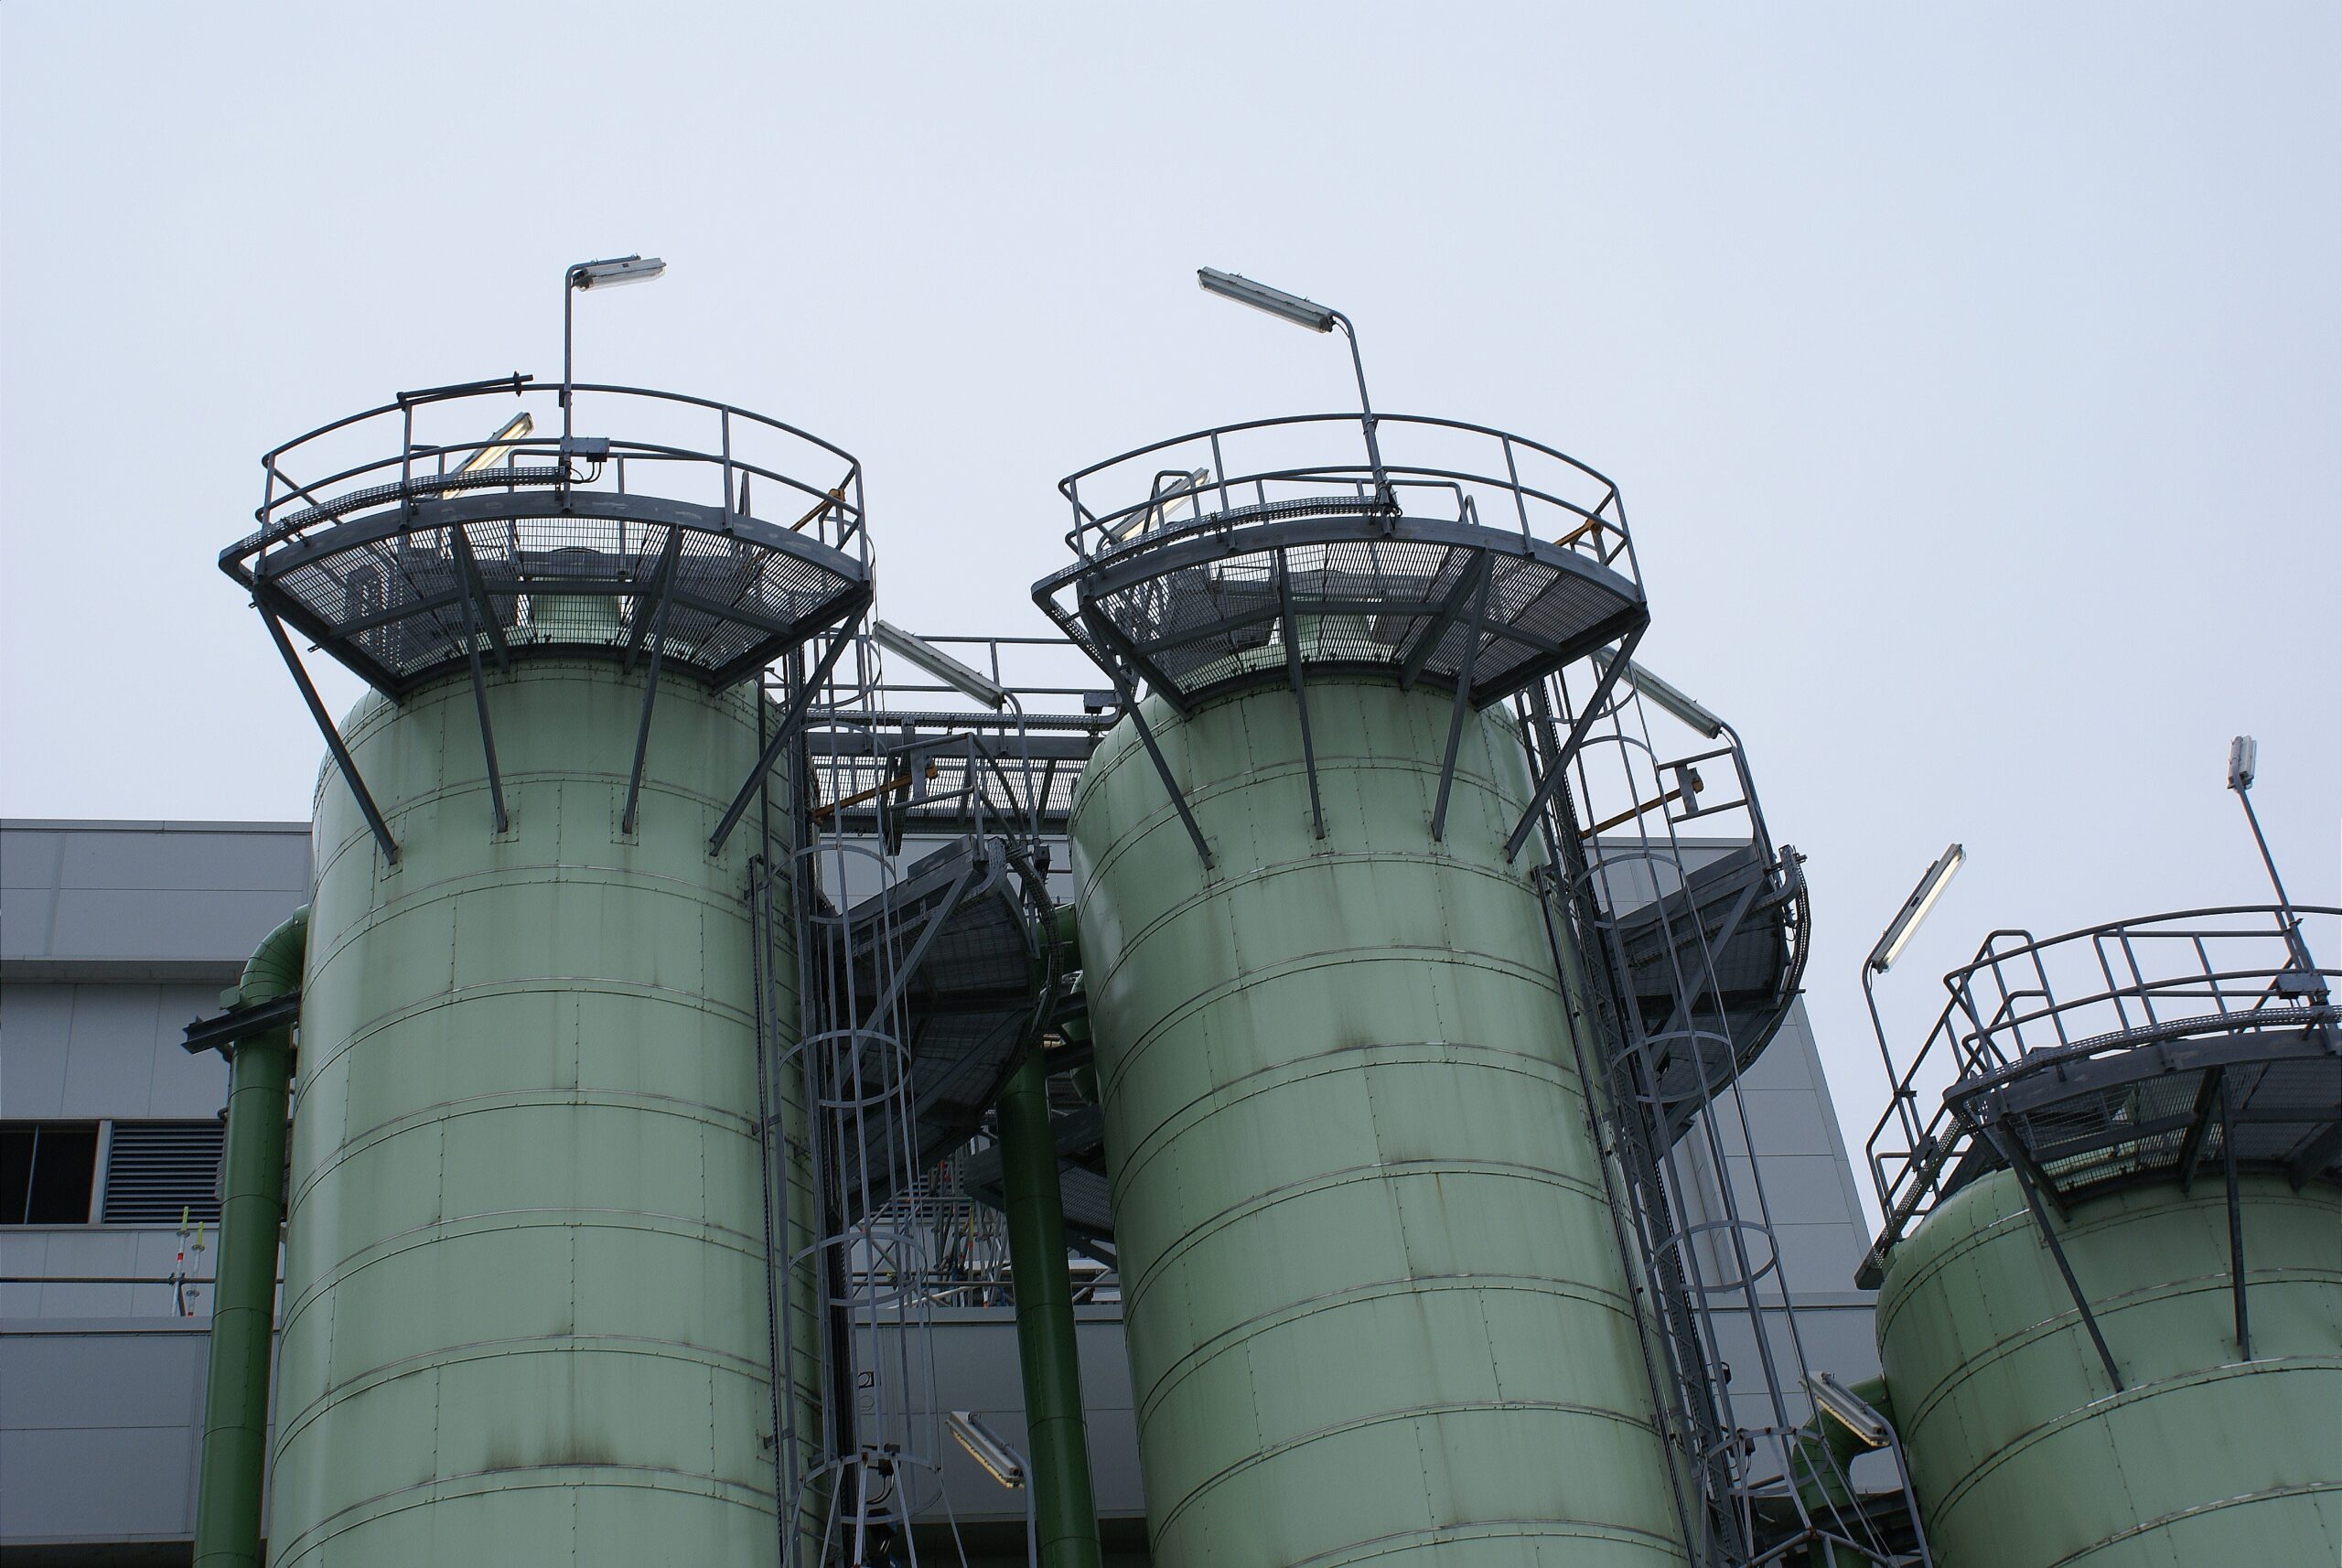 De silo's waar energiebedrijf Neste zijn afvalproducten opvangt voor de productie van hernieuwbare brandstoffen.